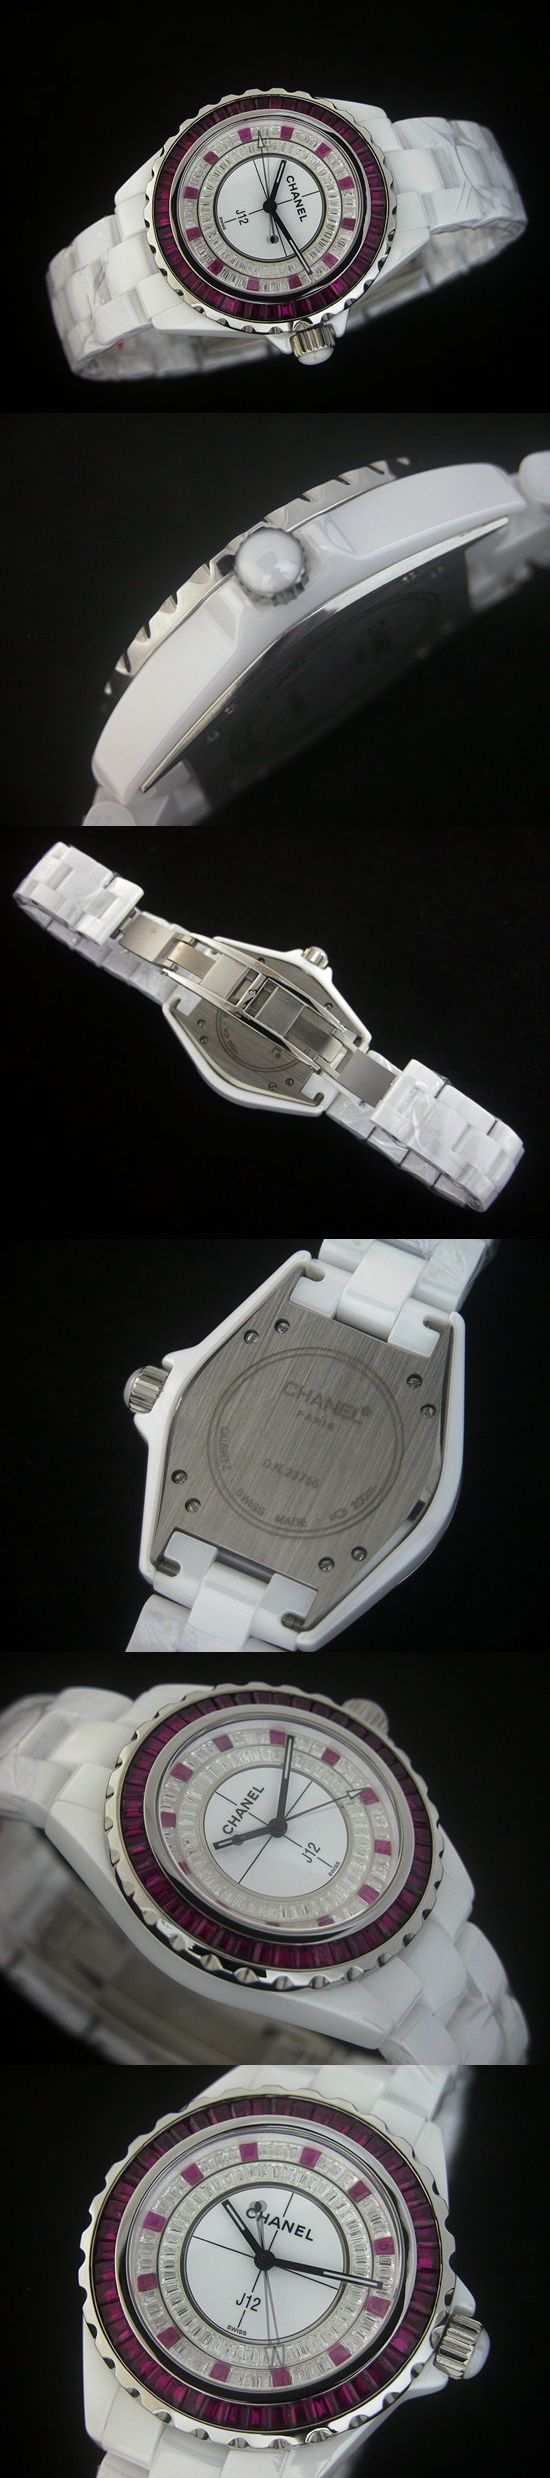 おしゃれなブランド時計がシャネル-CHANEL-H1761-ao-J12-男性用を提供します.